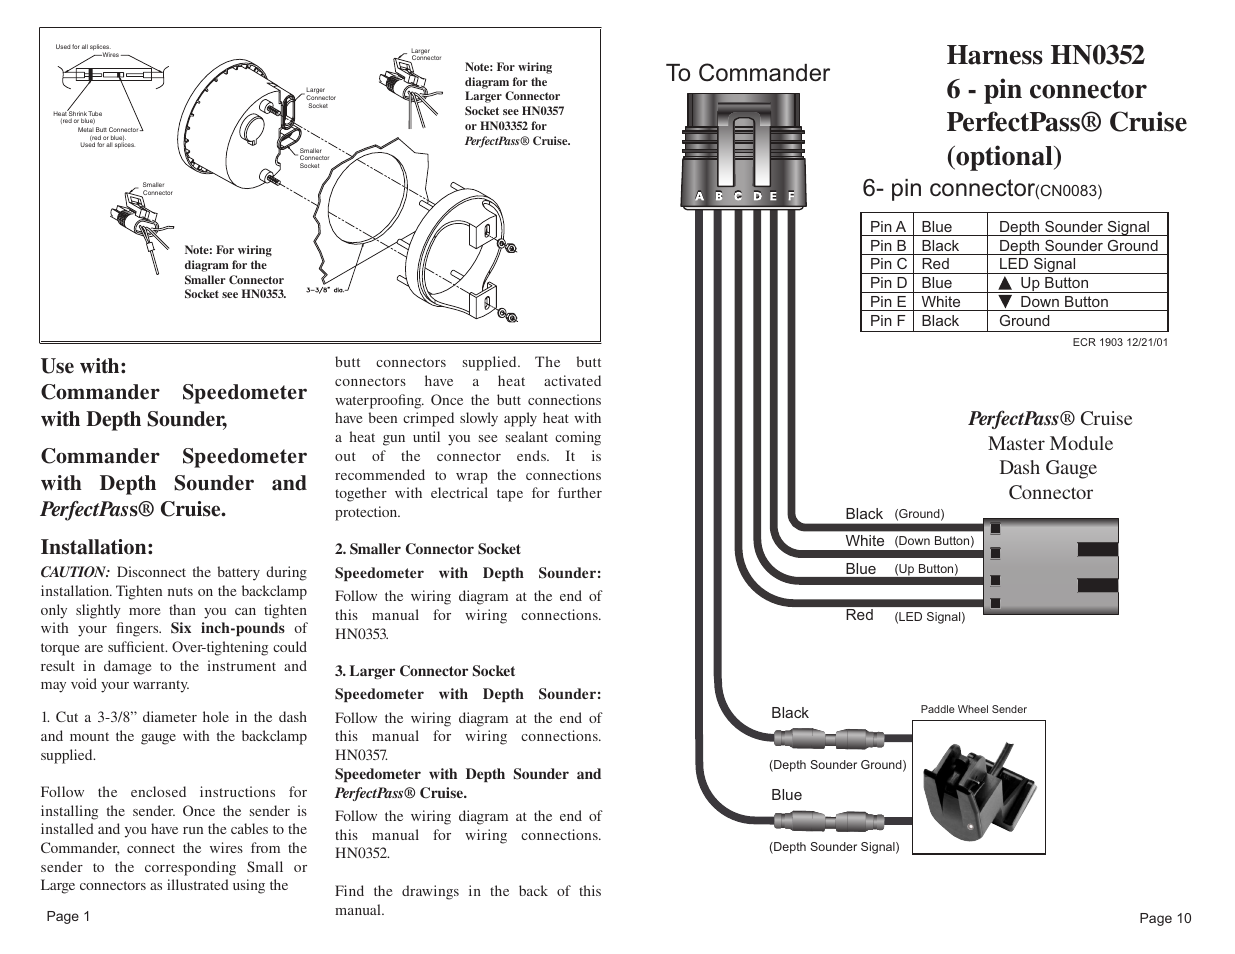 smartcraft wiring diagram